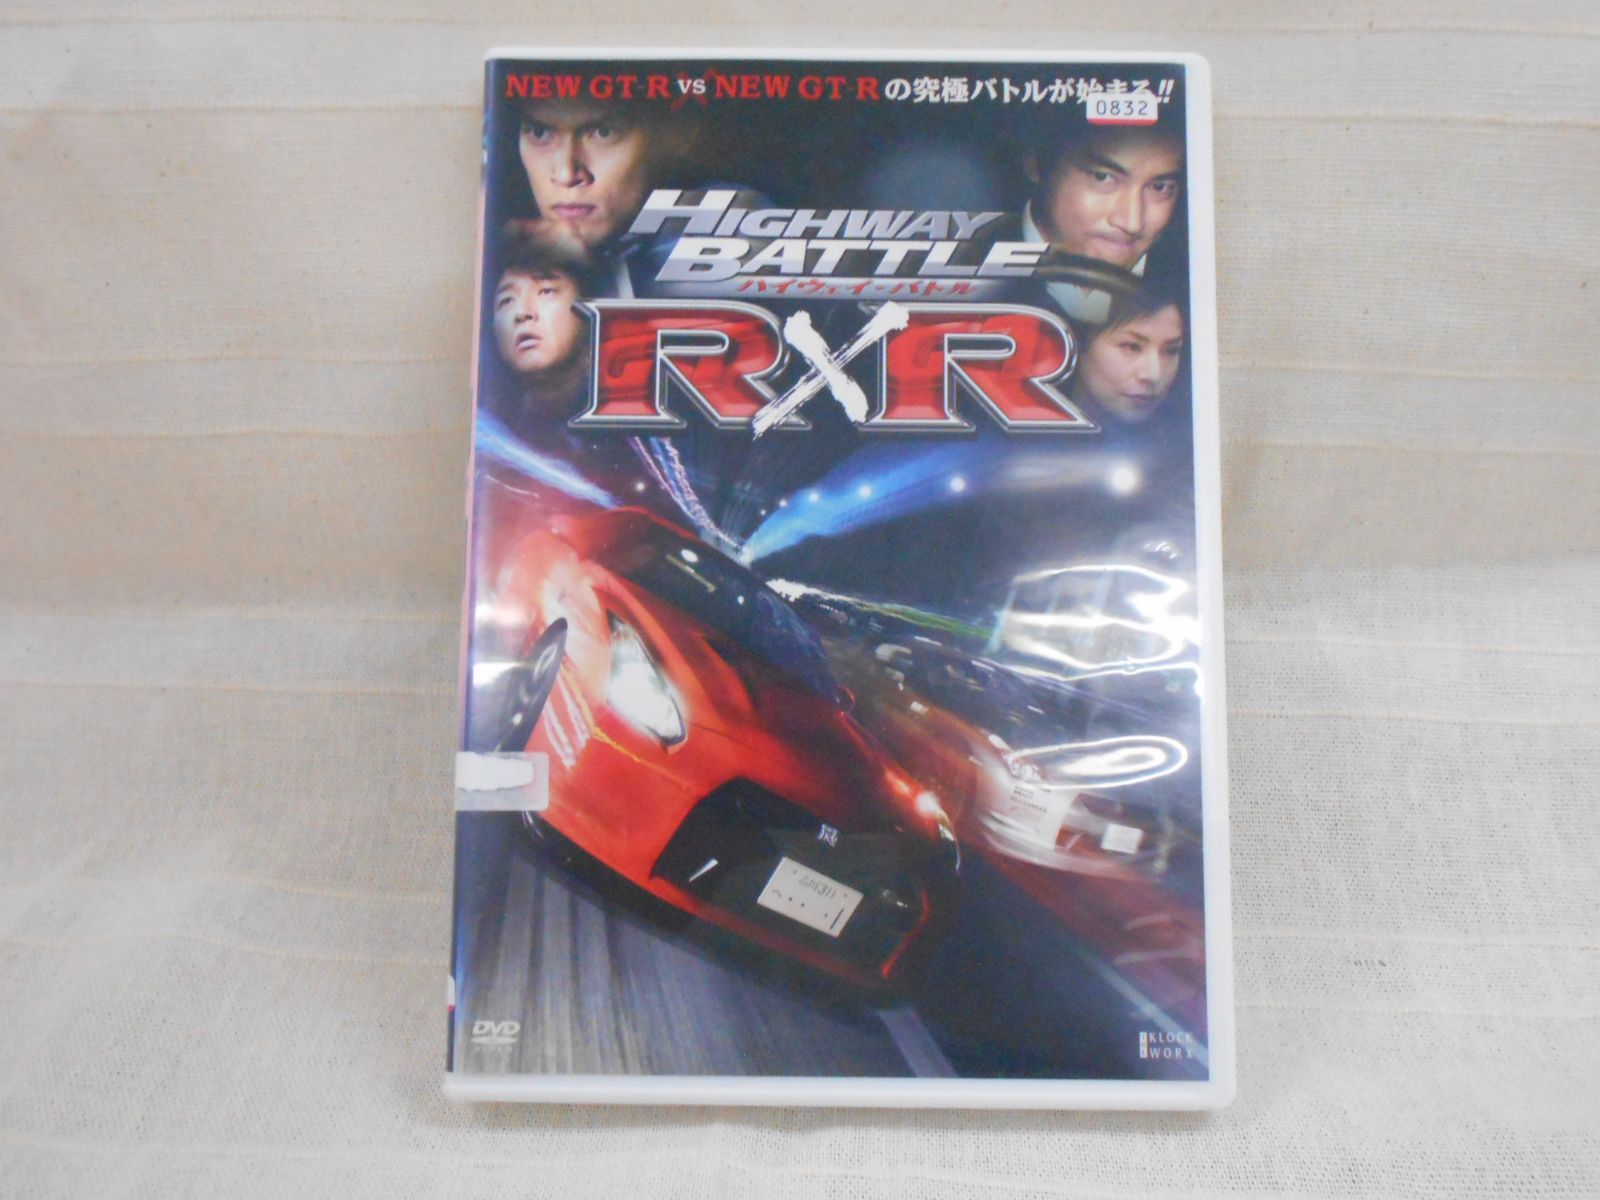 ハイウェイバトル R×R レンタル専用 中古 DVD ケース付き - メルカリ